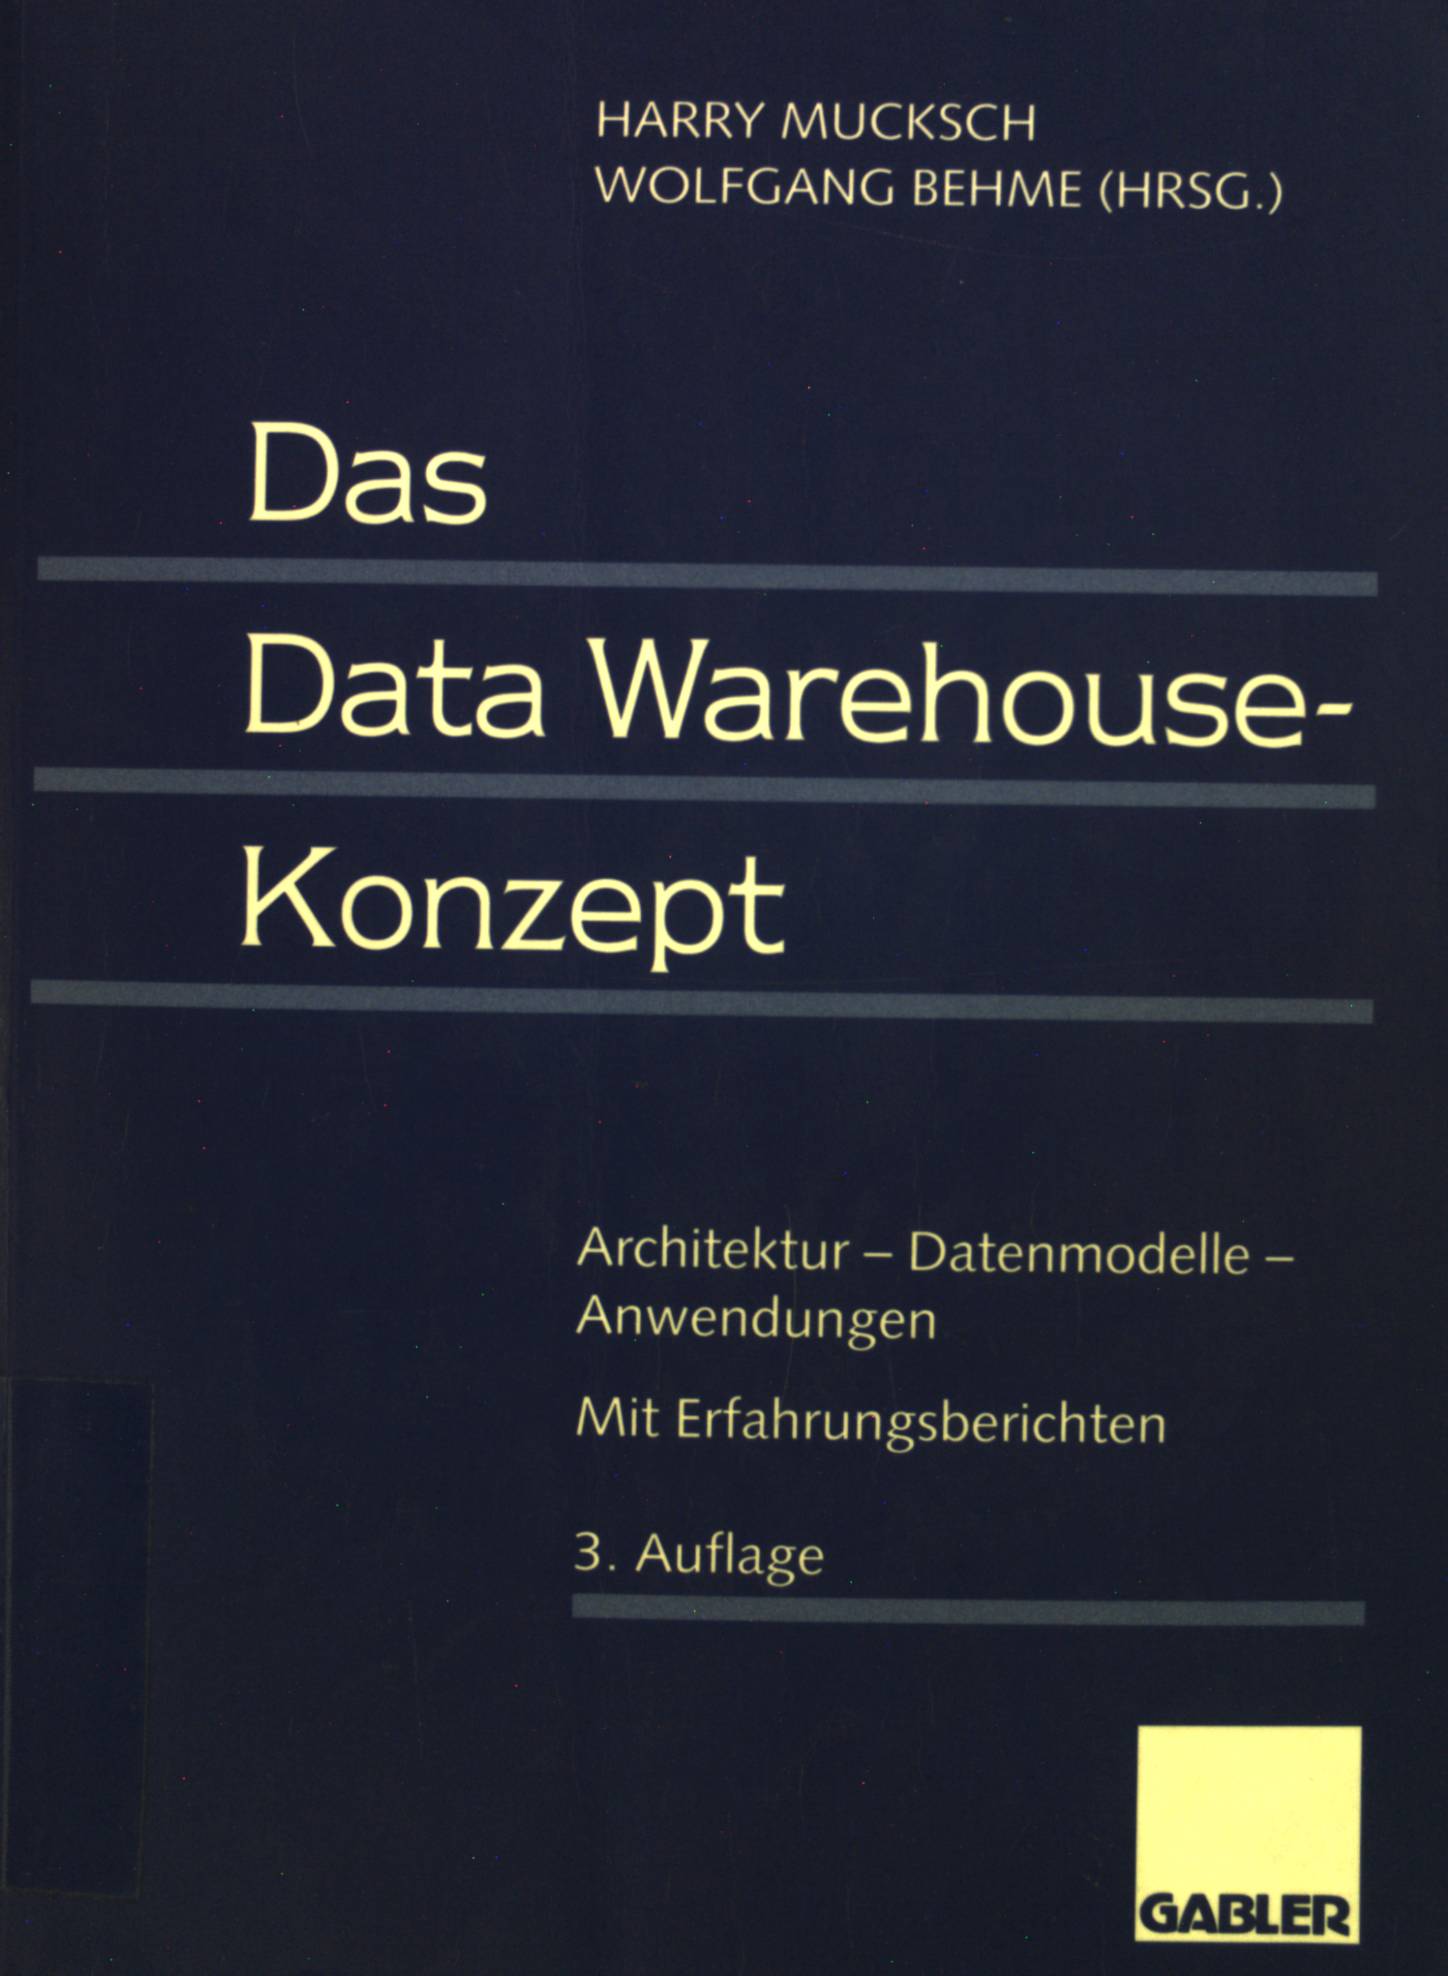 Das Data-warehouse-Konzept : Architektur - Datenmodelle - Anwendungen ; mit Erfahrungsberichten. - Mucksch, Harry